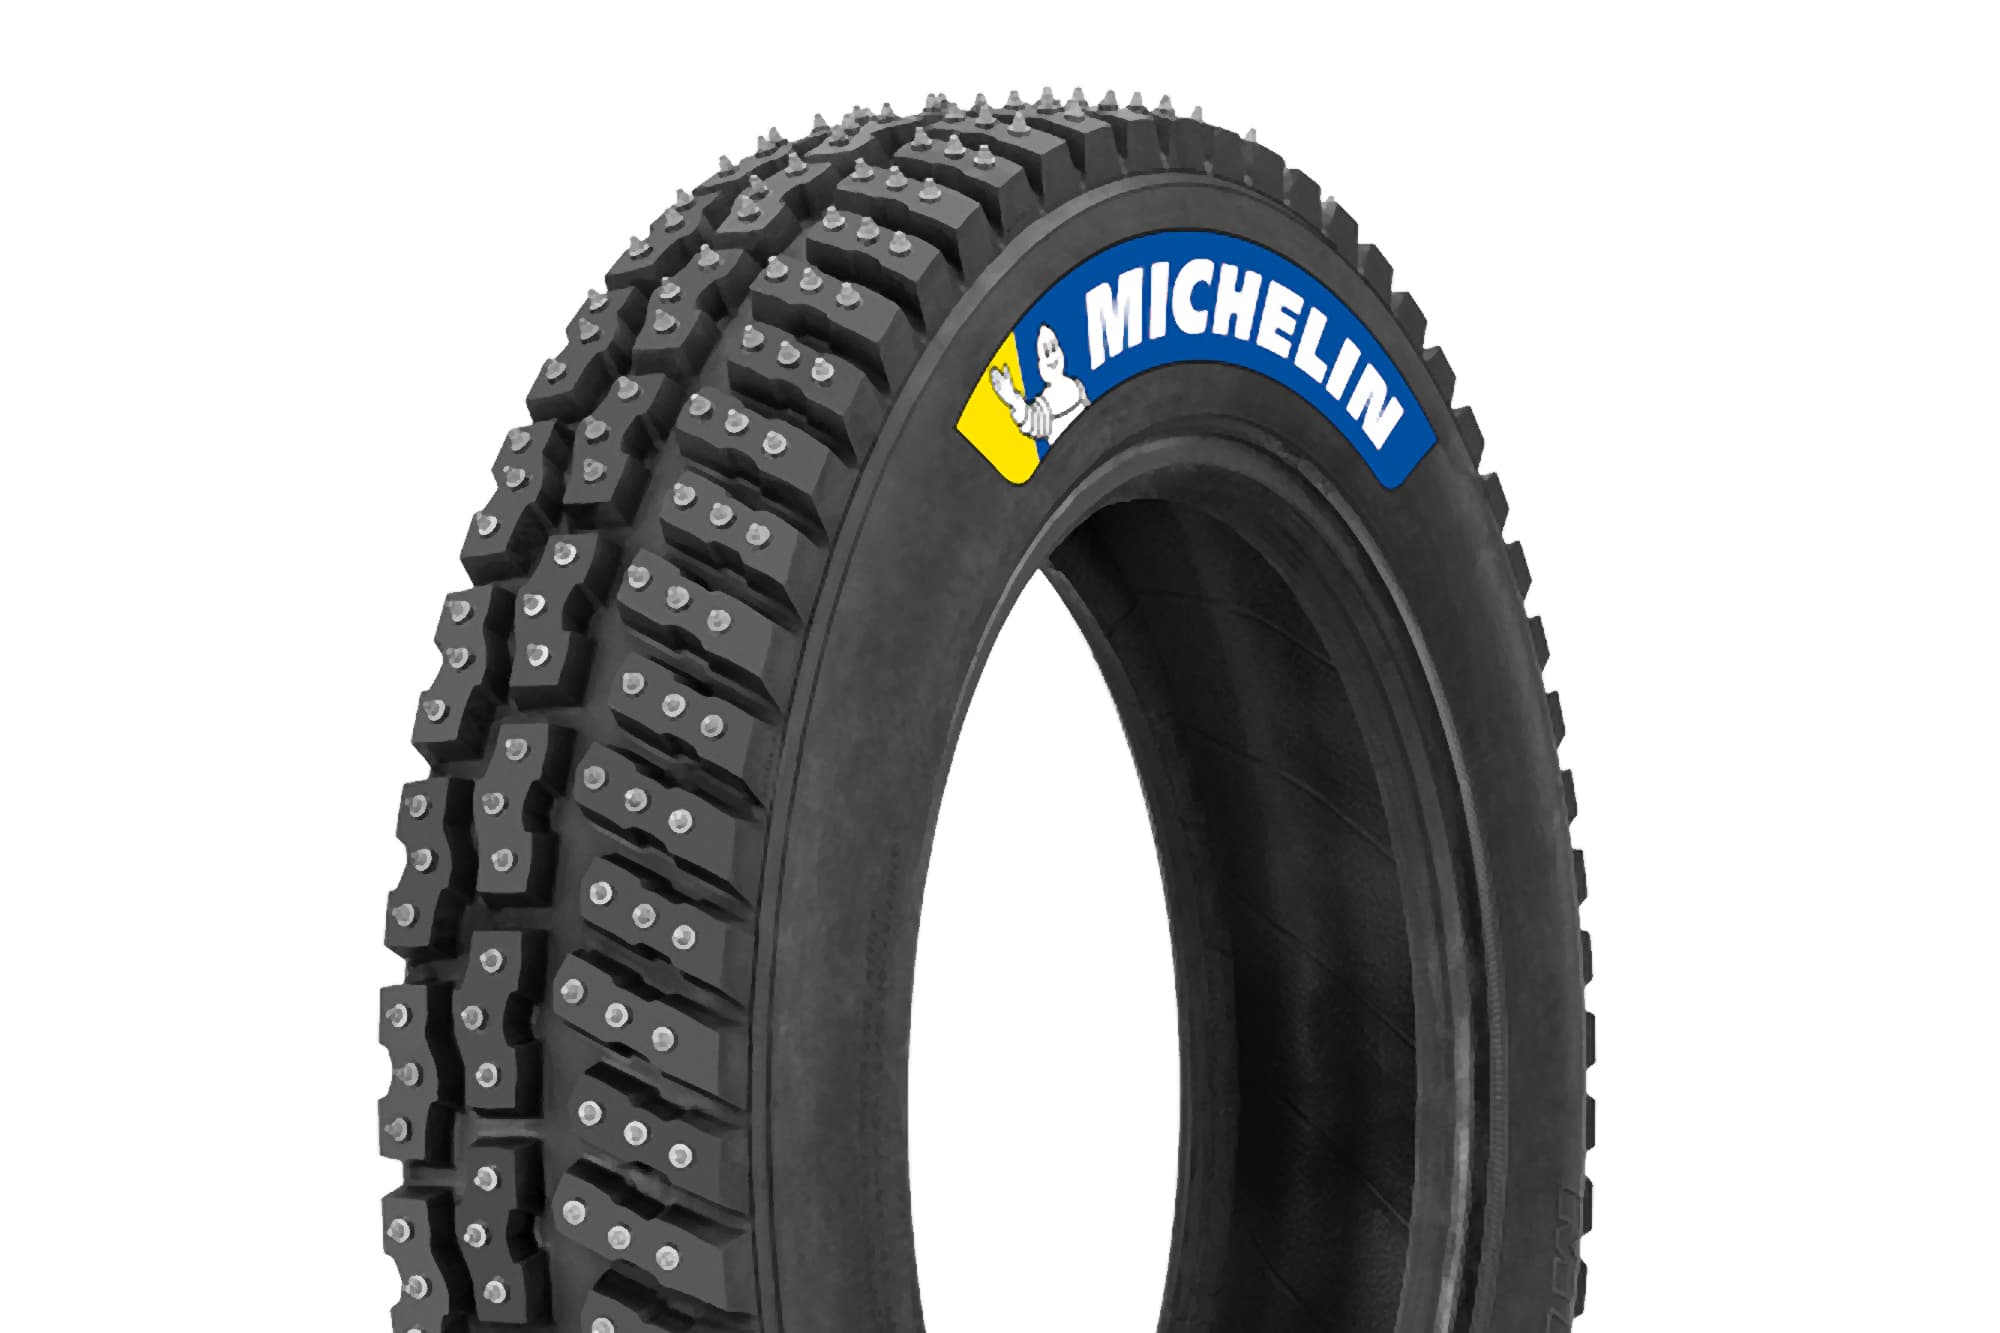 Neumático con clavos Michelin